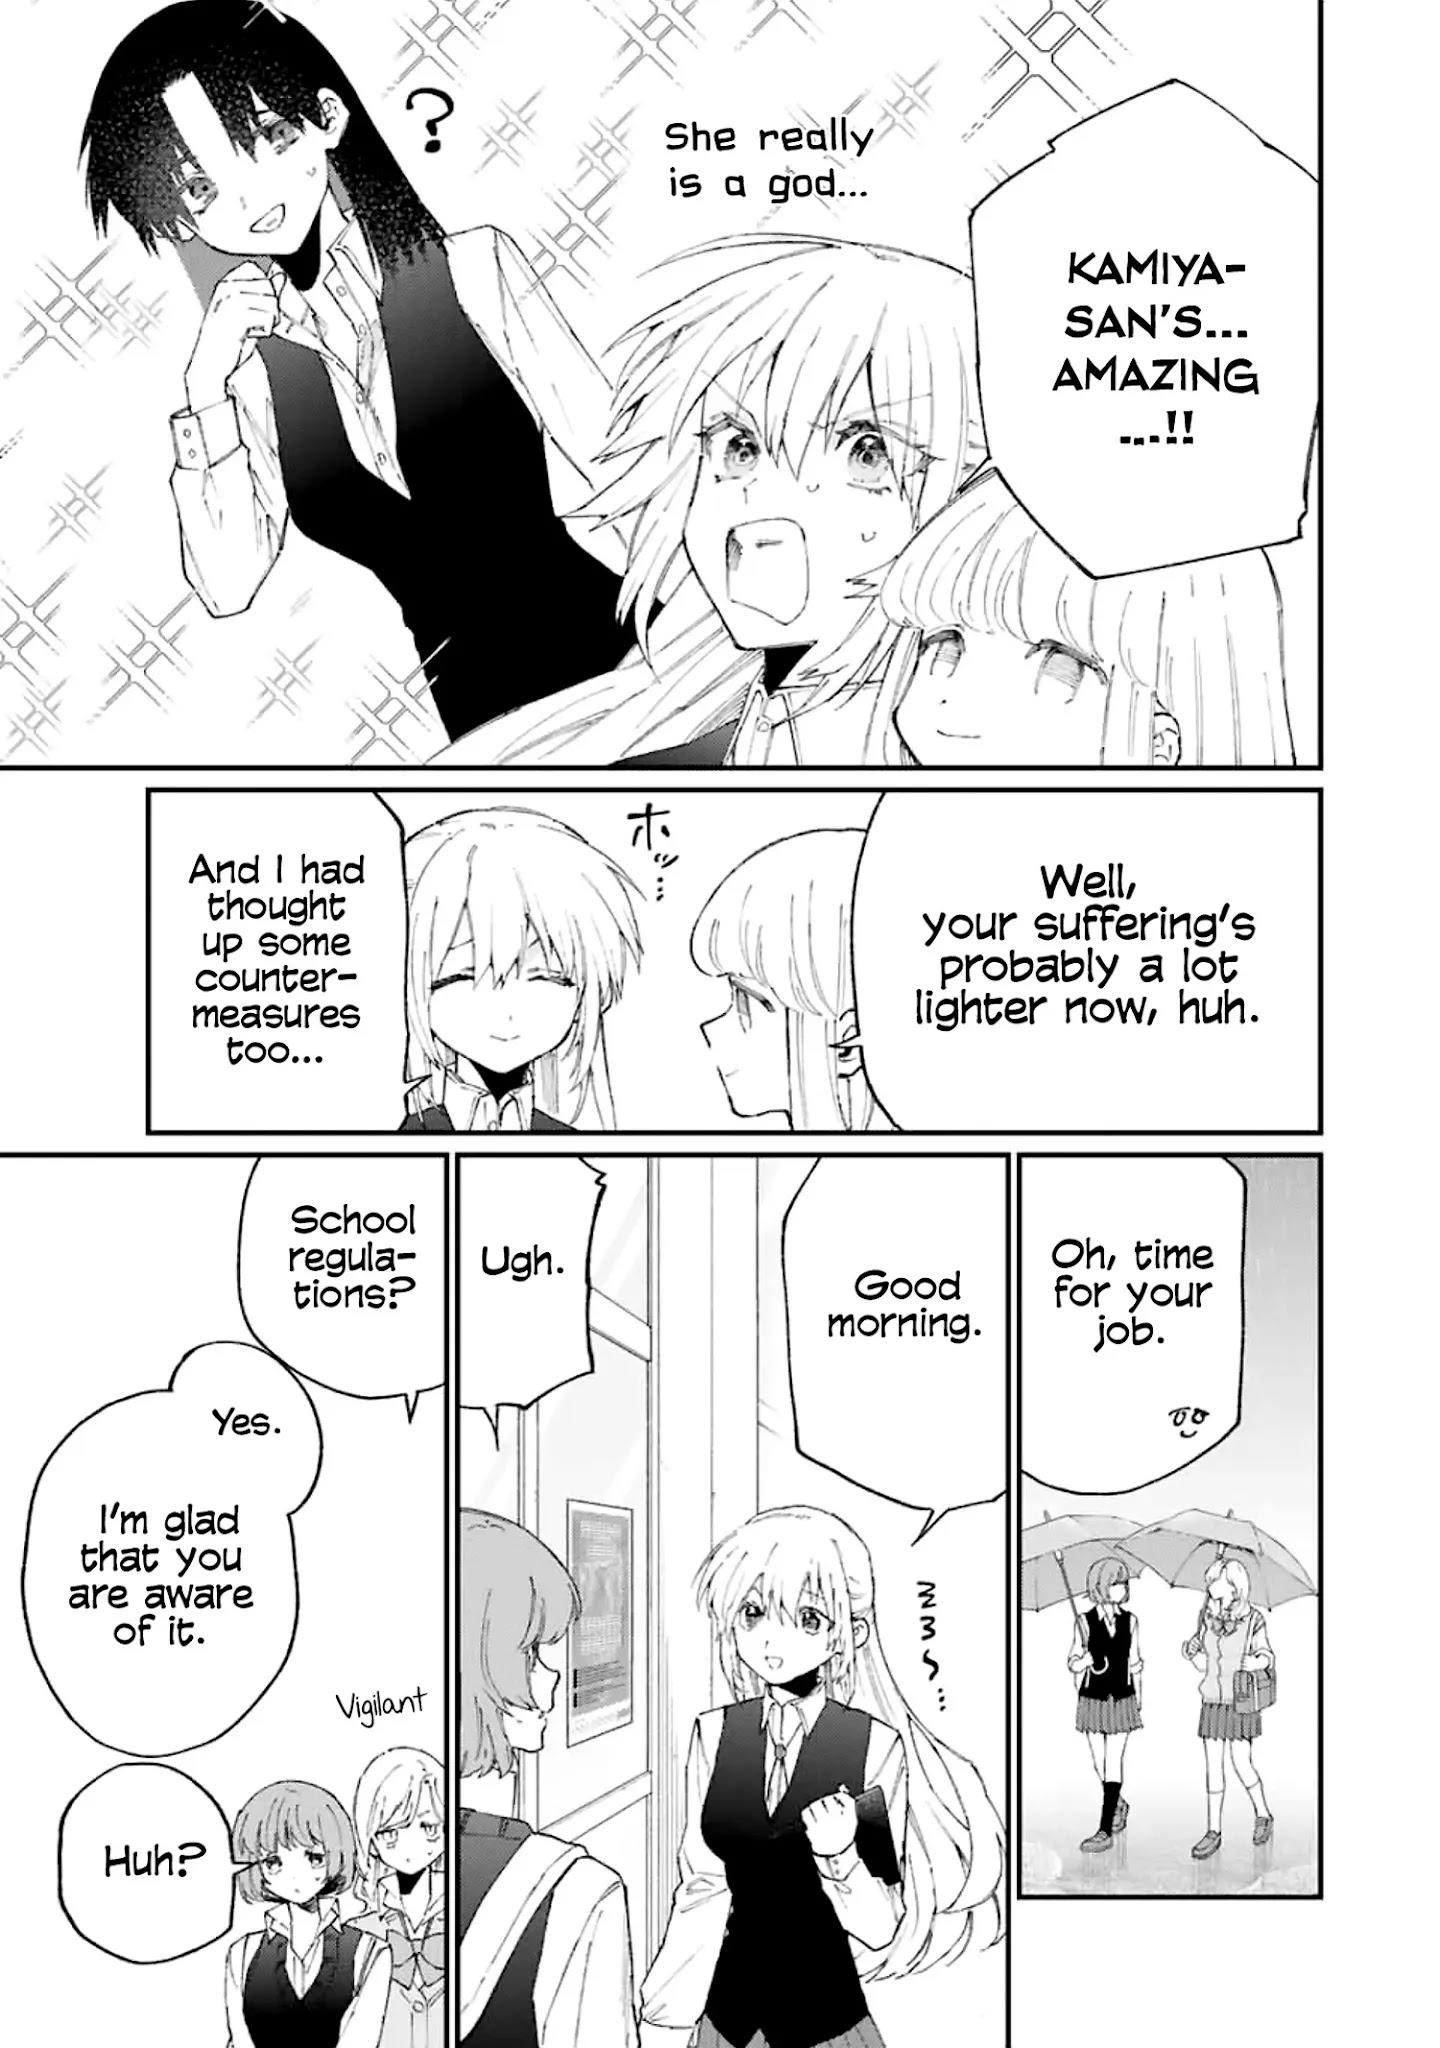 Shikimori's Not Just A Cutie Chapter 124 page 6 - Mangakakalots.com